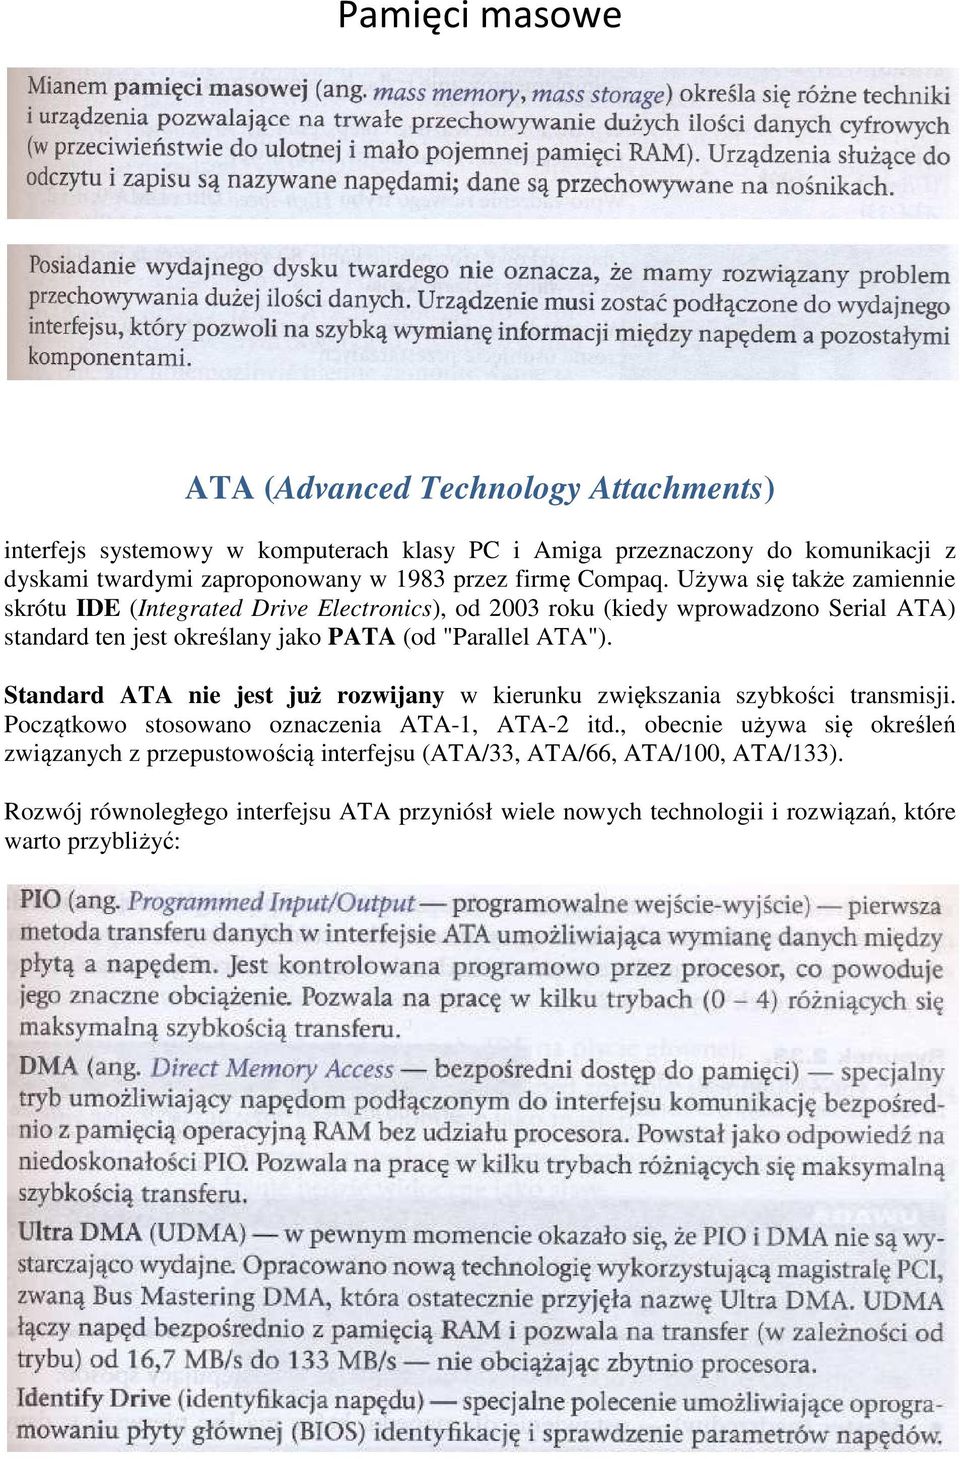 Używa się także zamiennie skrótu IDE (Integrated Drive Electronics), od 2003 roku (kiedy wprowadzono Serial ATA) standard ten jest określany jako PATA (od "Parallel ATA").